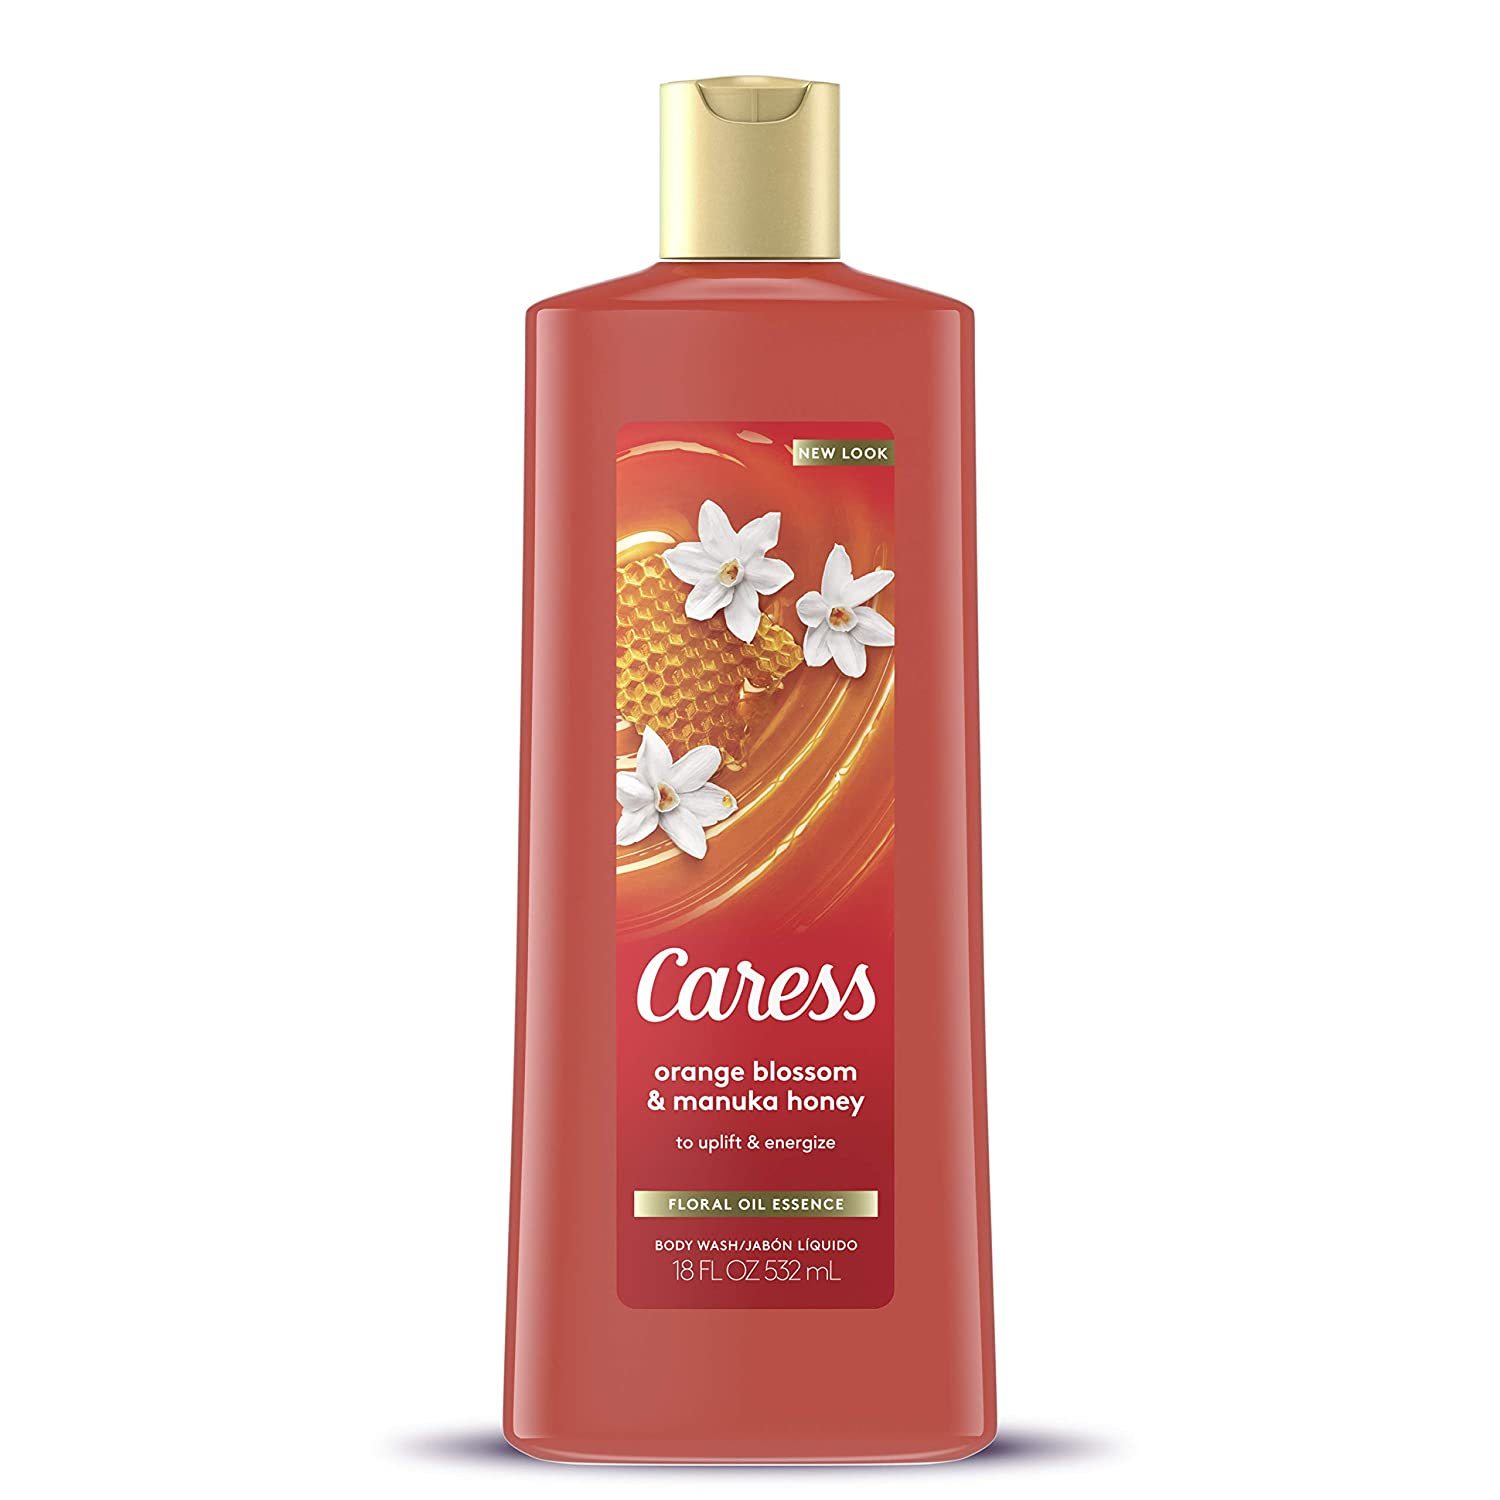 New CARESS Orange Blossom & Manuka Honey Uplift & Energize Body Wash 18 oz